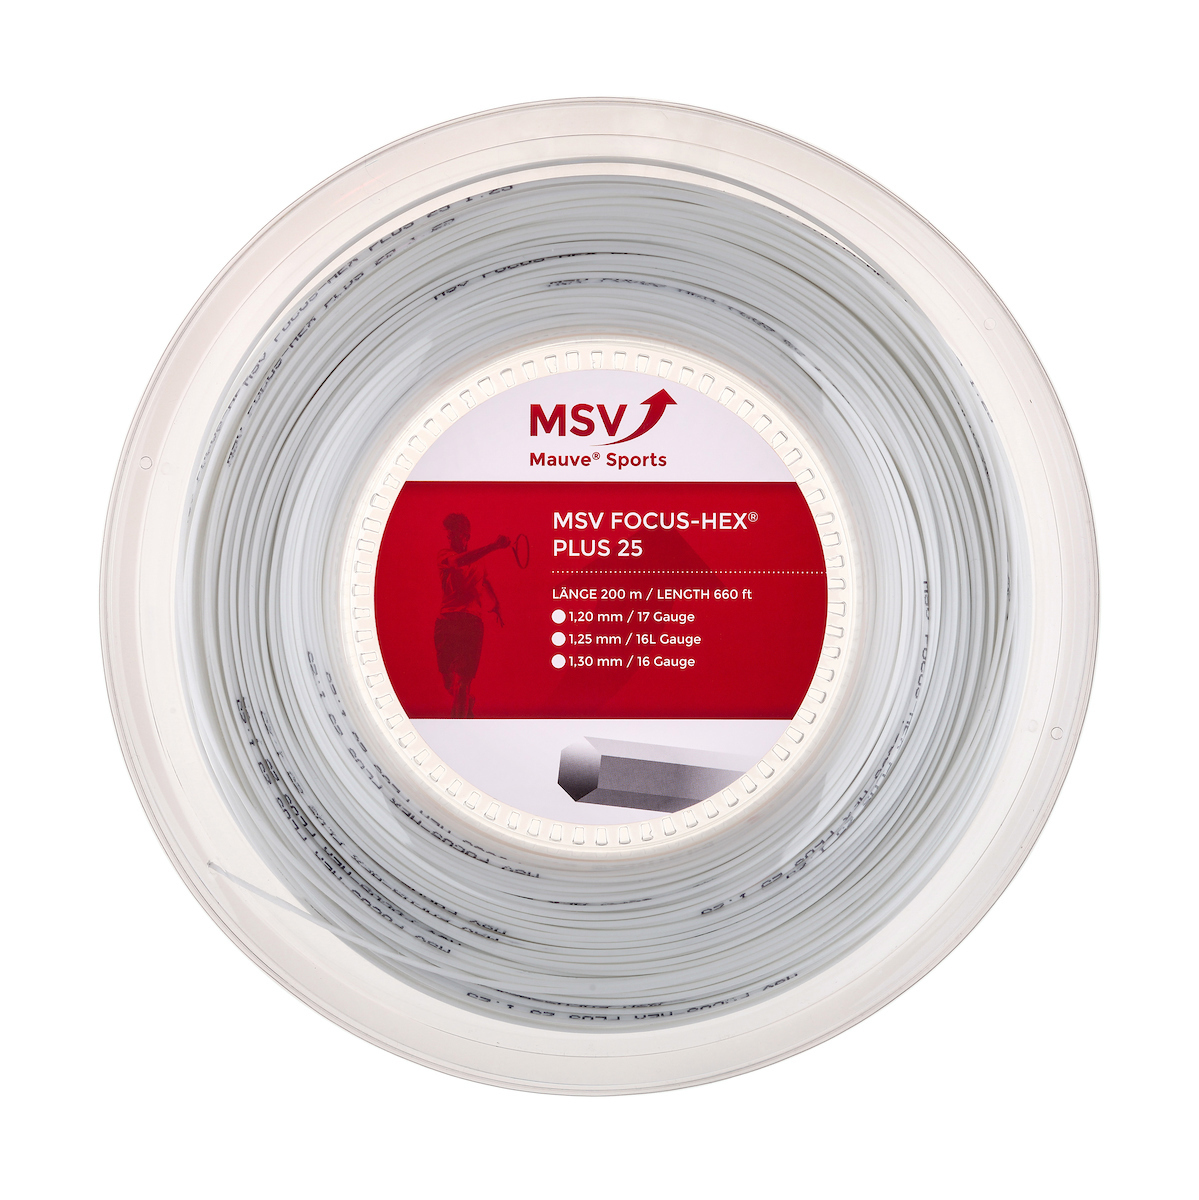 Mauve MSV Focus-Hex Plus 25 weiß, 200m